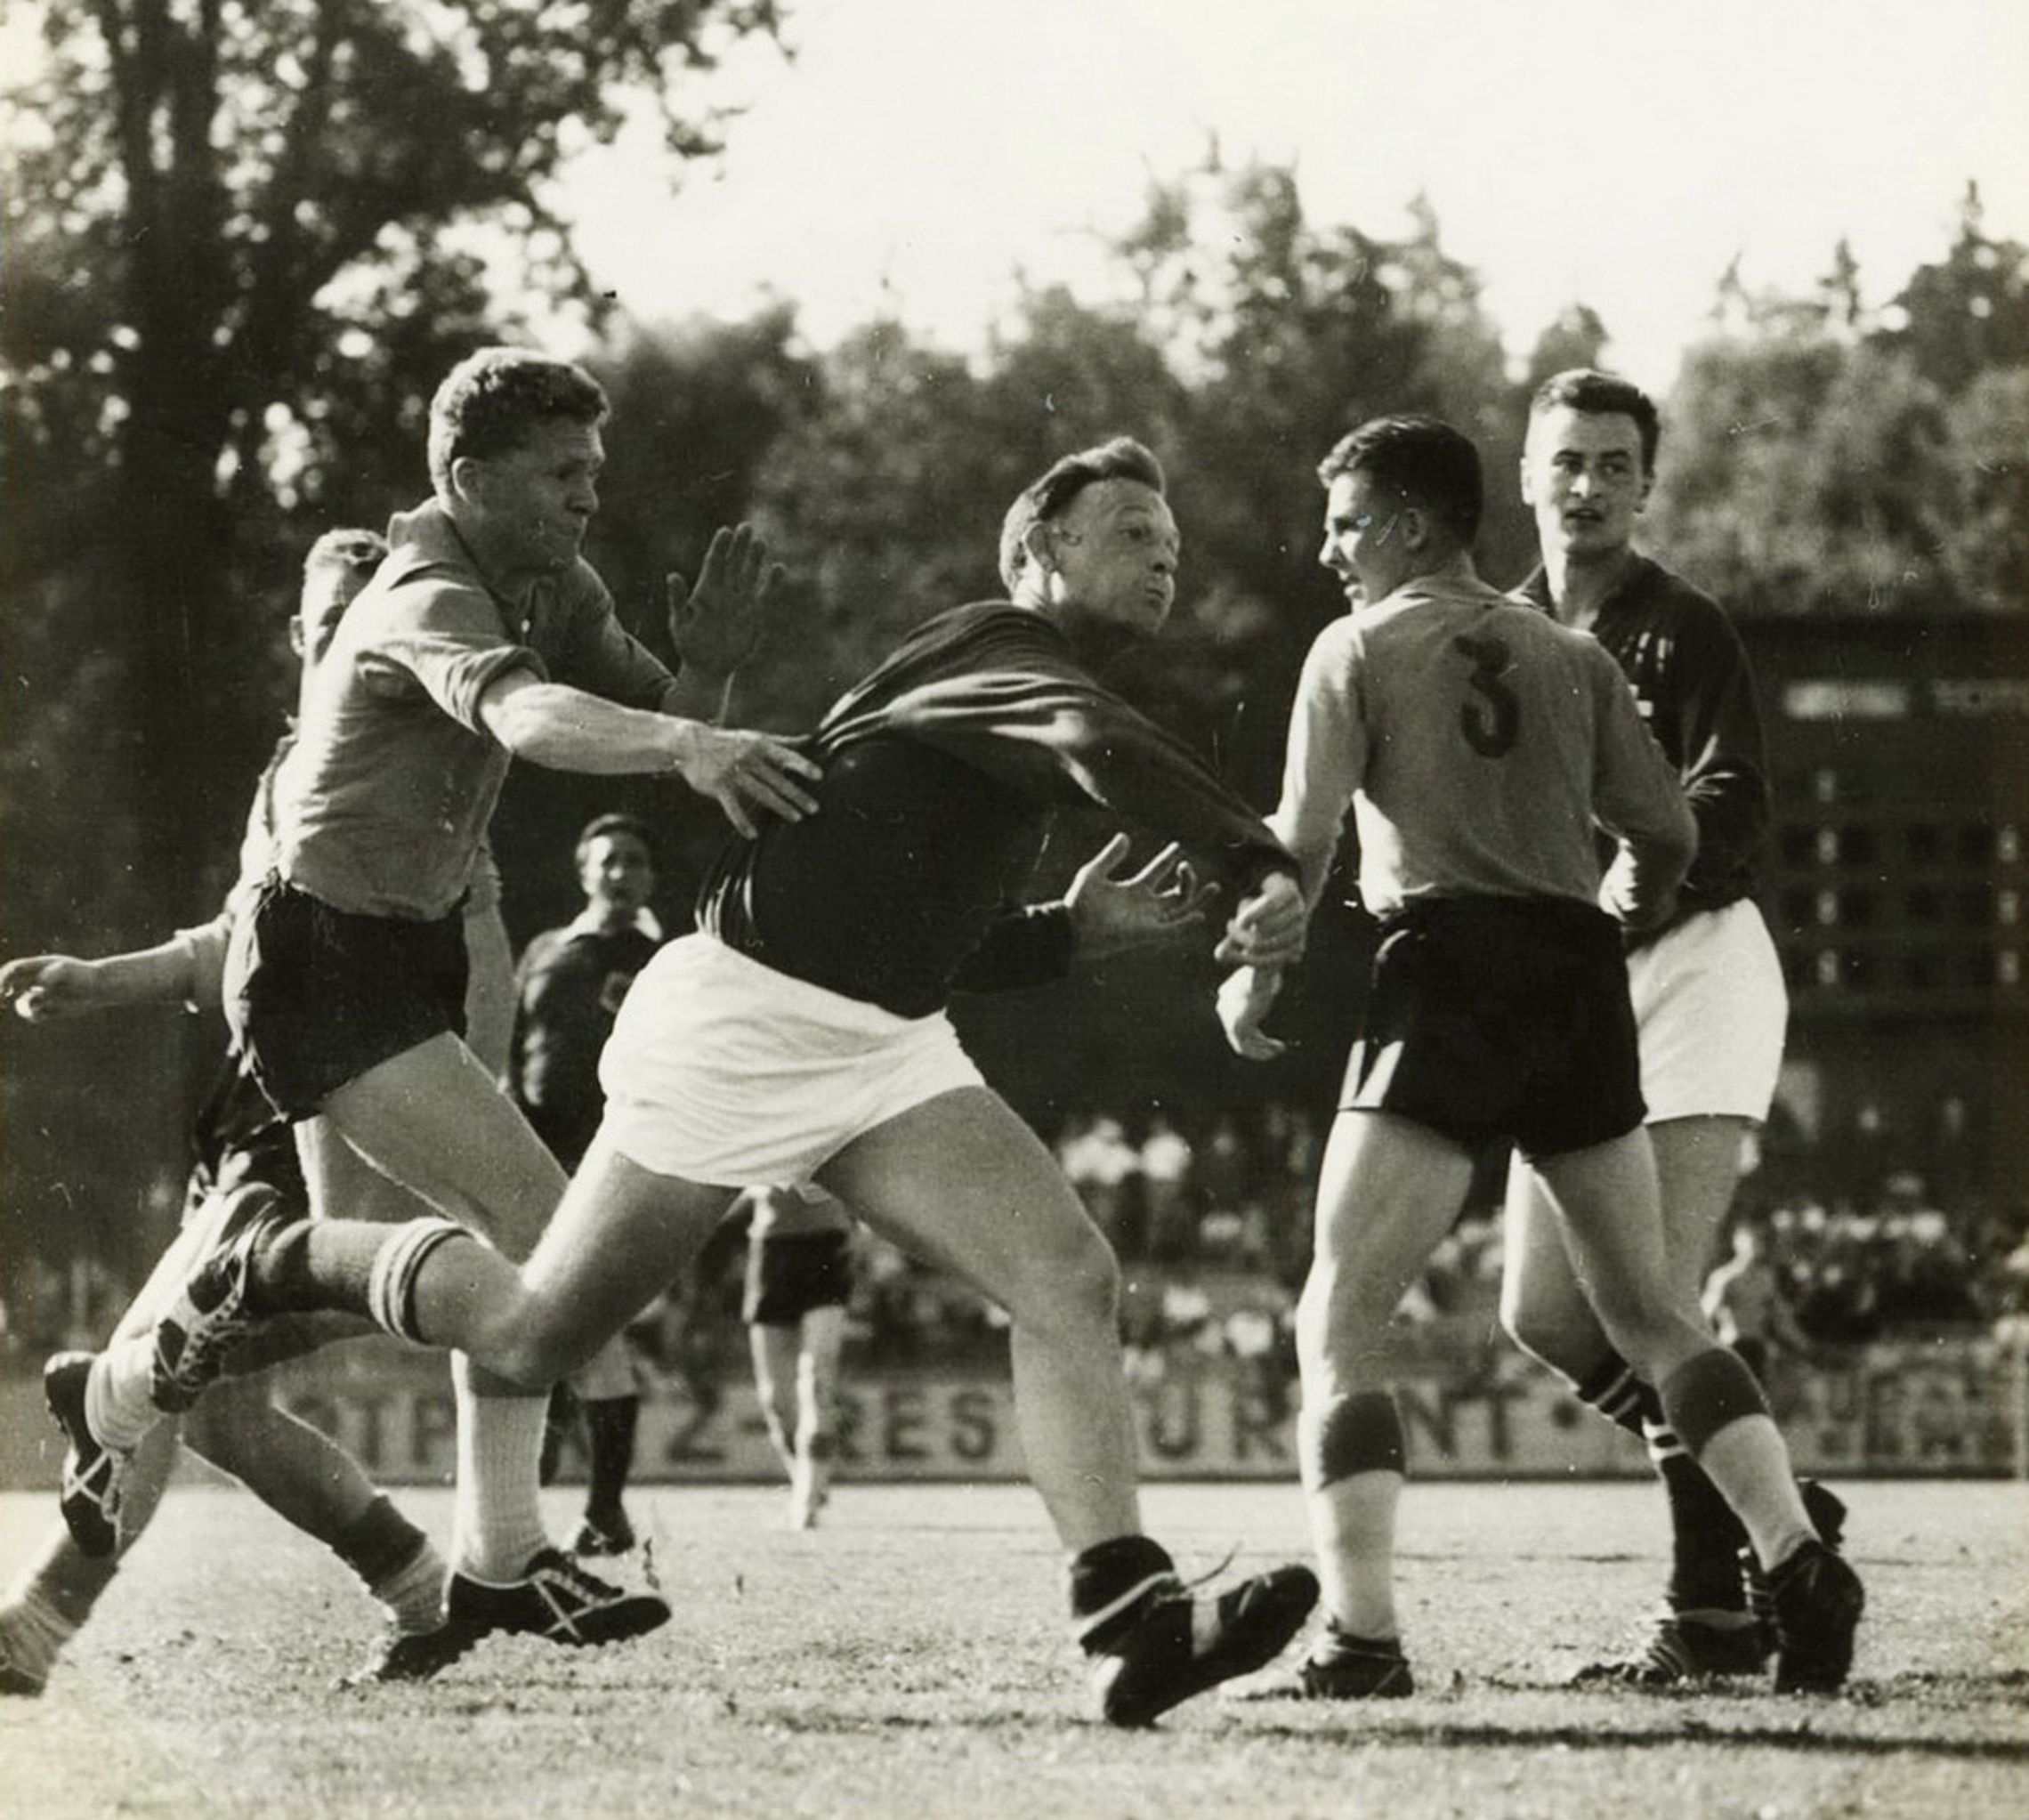 15.6.1958 Schweiz - Holland 22:17 (10:6), Bern Neufeld, 2000 zuschauer, Schiedsrichter Kunte, Fulda GER